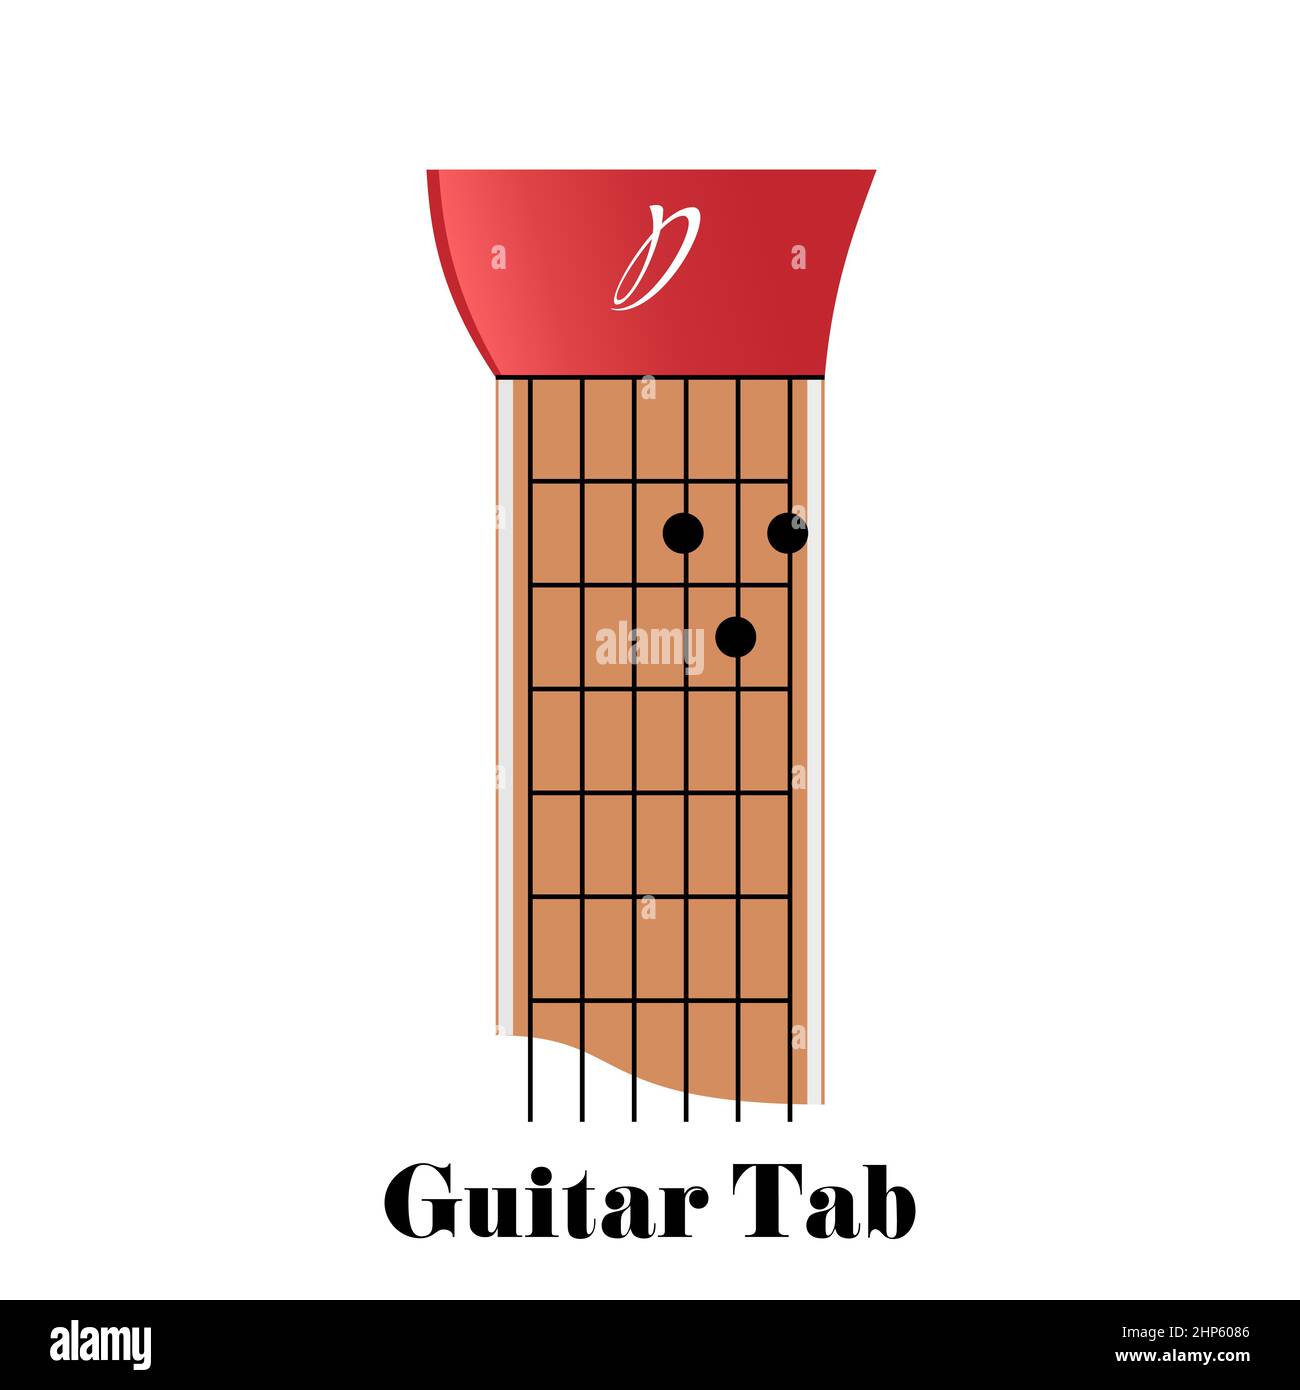 Tabulateur de guitare avec corde D Major Illustration de Vecteur